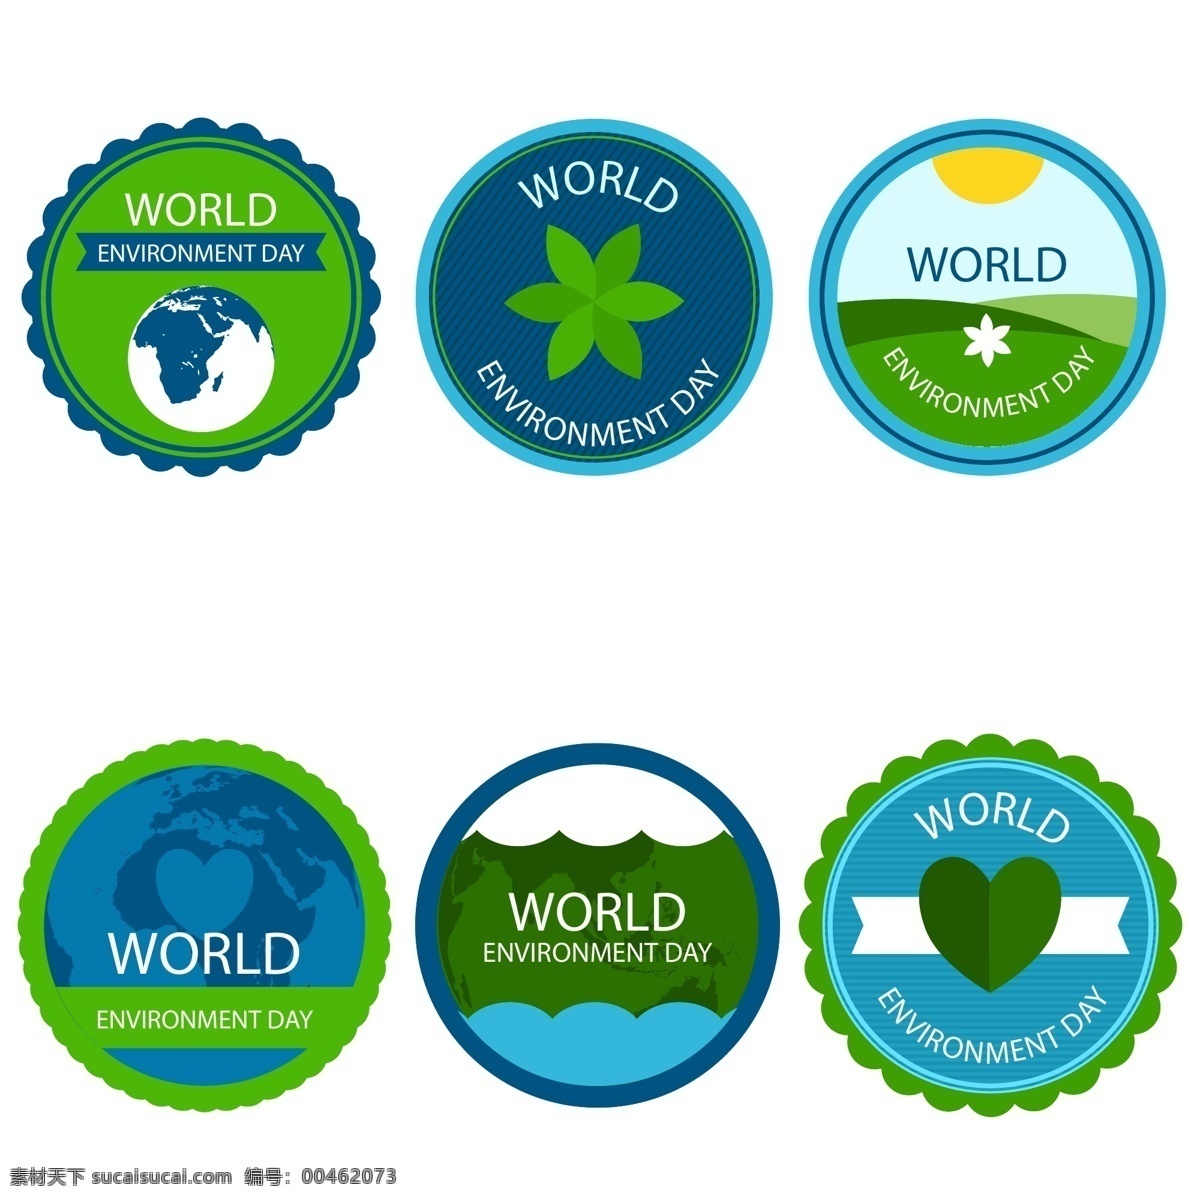 绿色 环境日 标志设计 树叶 蓝色 矢量素材 地球 英文 环境 自然 世界